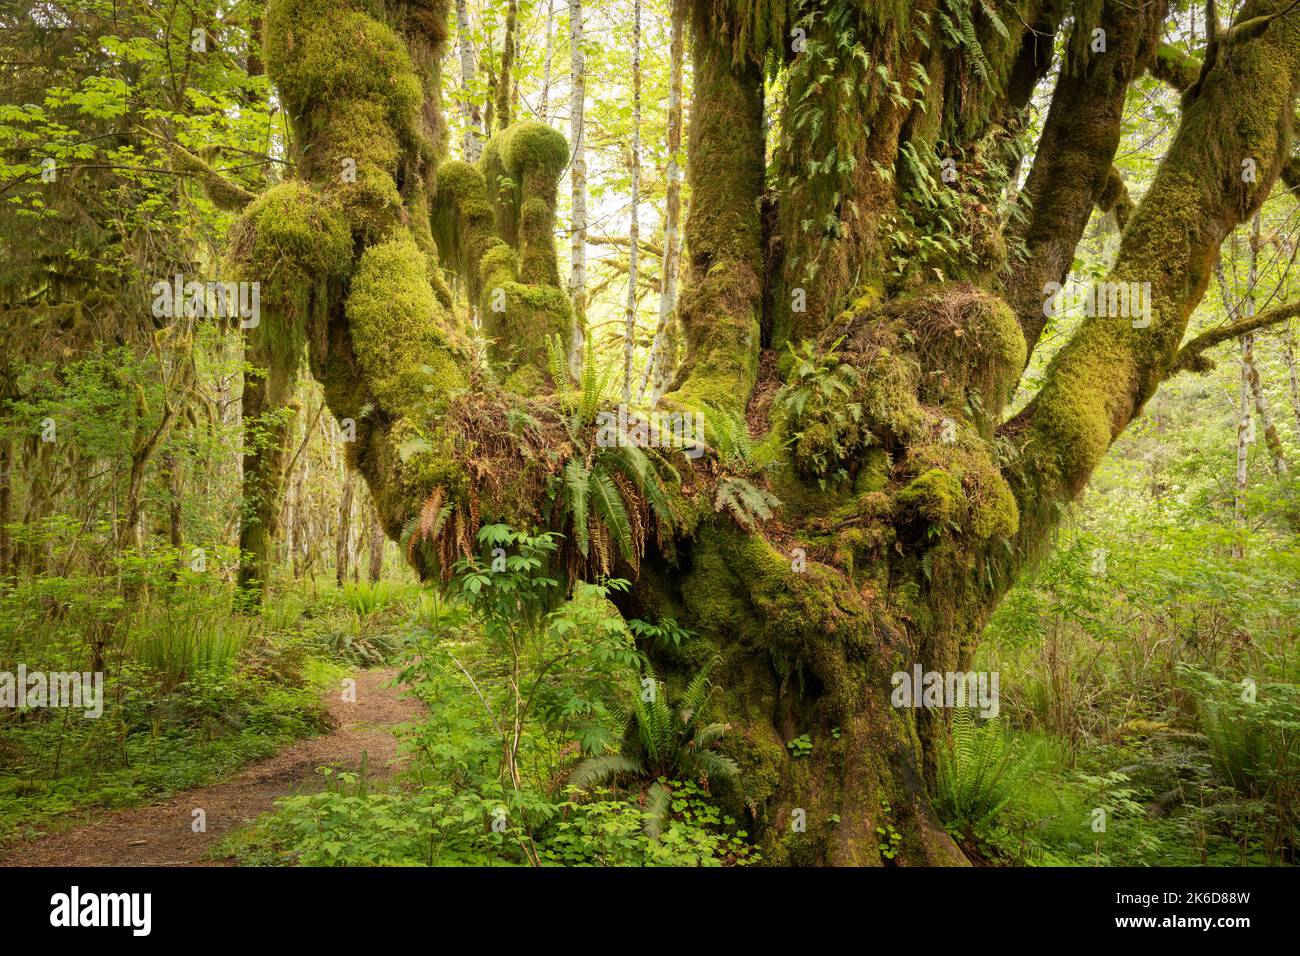 WA22243-00...WASHINGTON - albero dell'acero delle foglie grandi che serve come giardino per i vari tipi di muschio e felci nella foresta pluviale di Quinault di nazionale olimpica Foto Stock